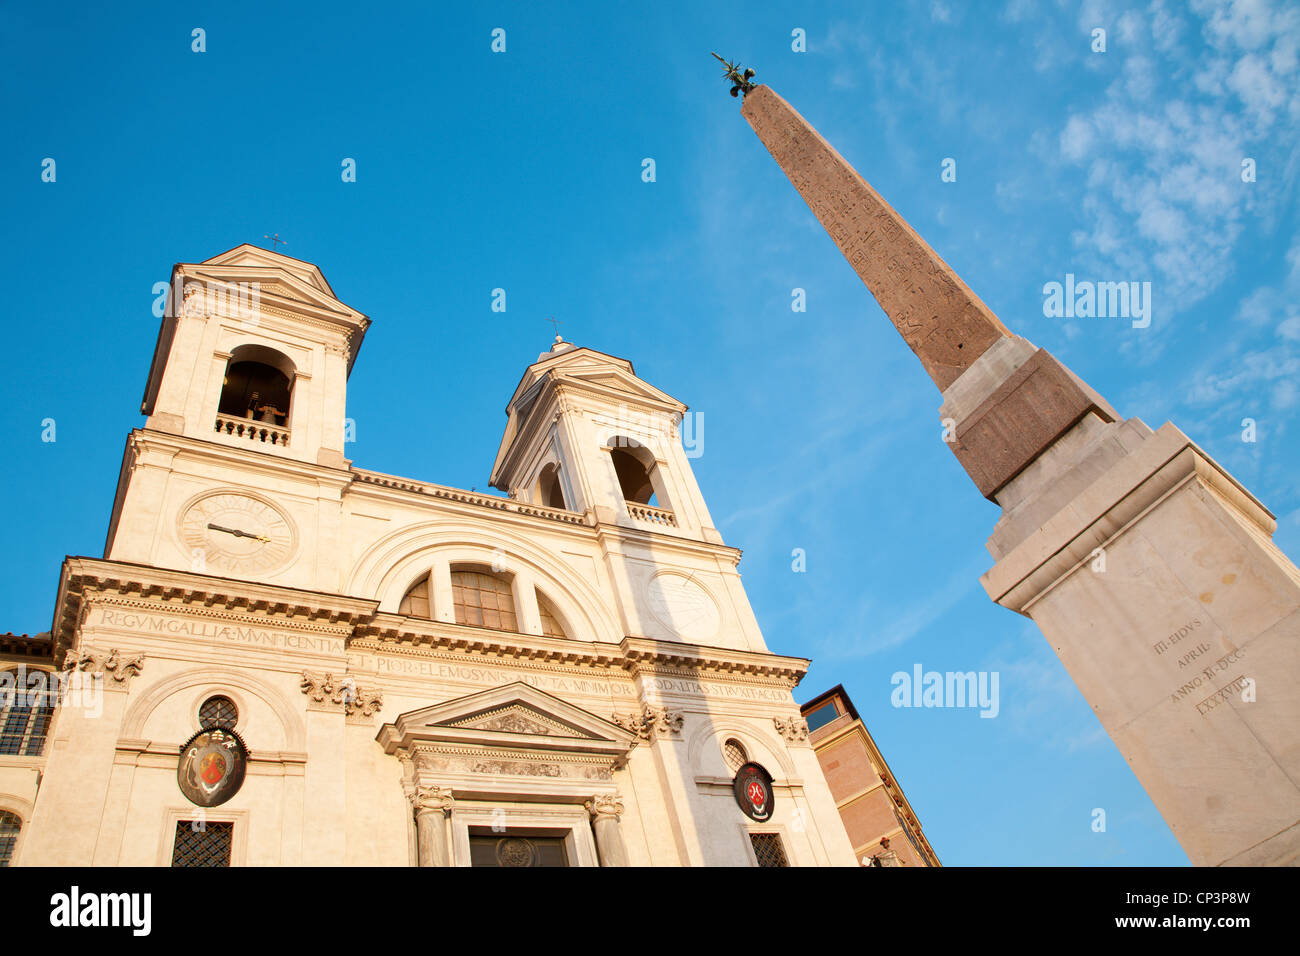 Rome - Chiesa della Trinita dei Monti church and obelisk Stock Photo